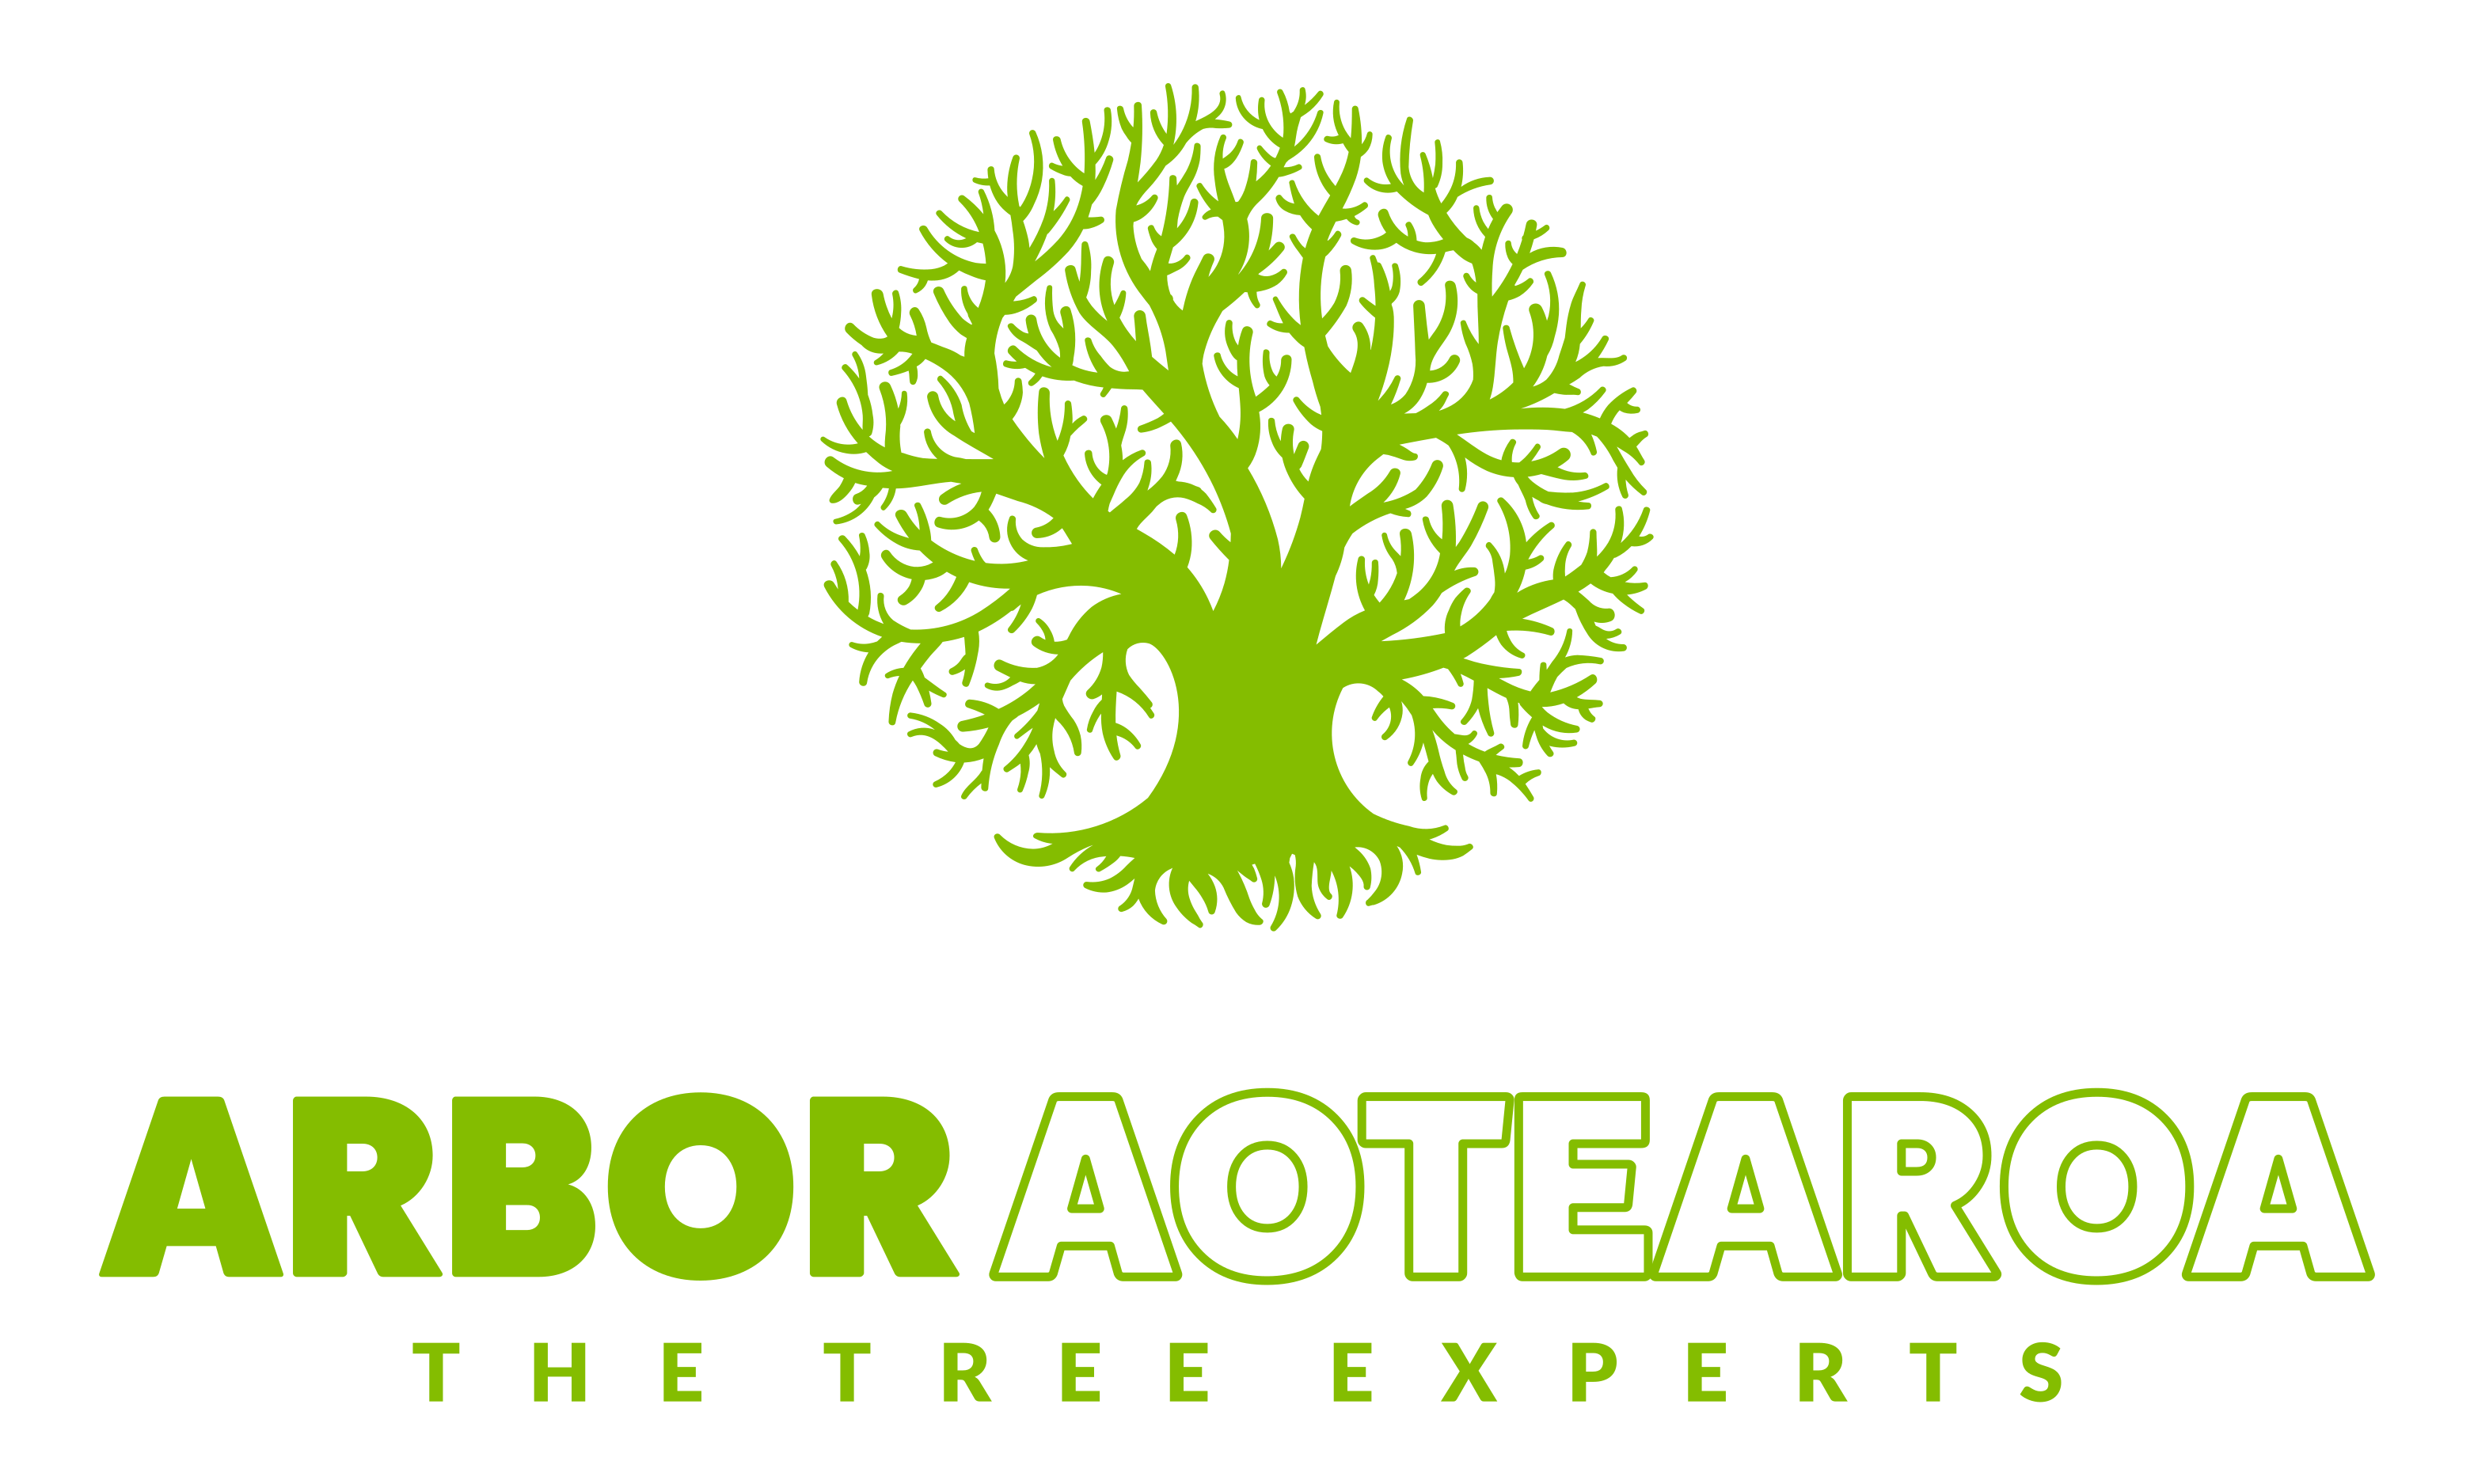 Arbor Aotearoa - The Tree Experts